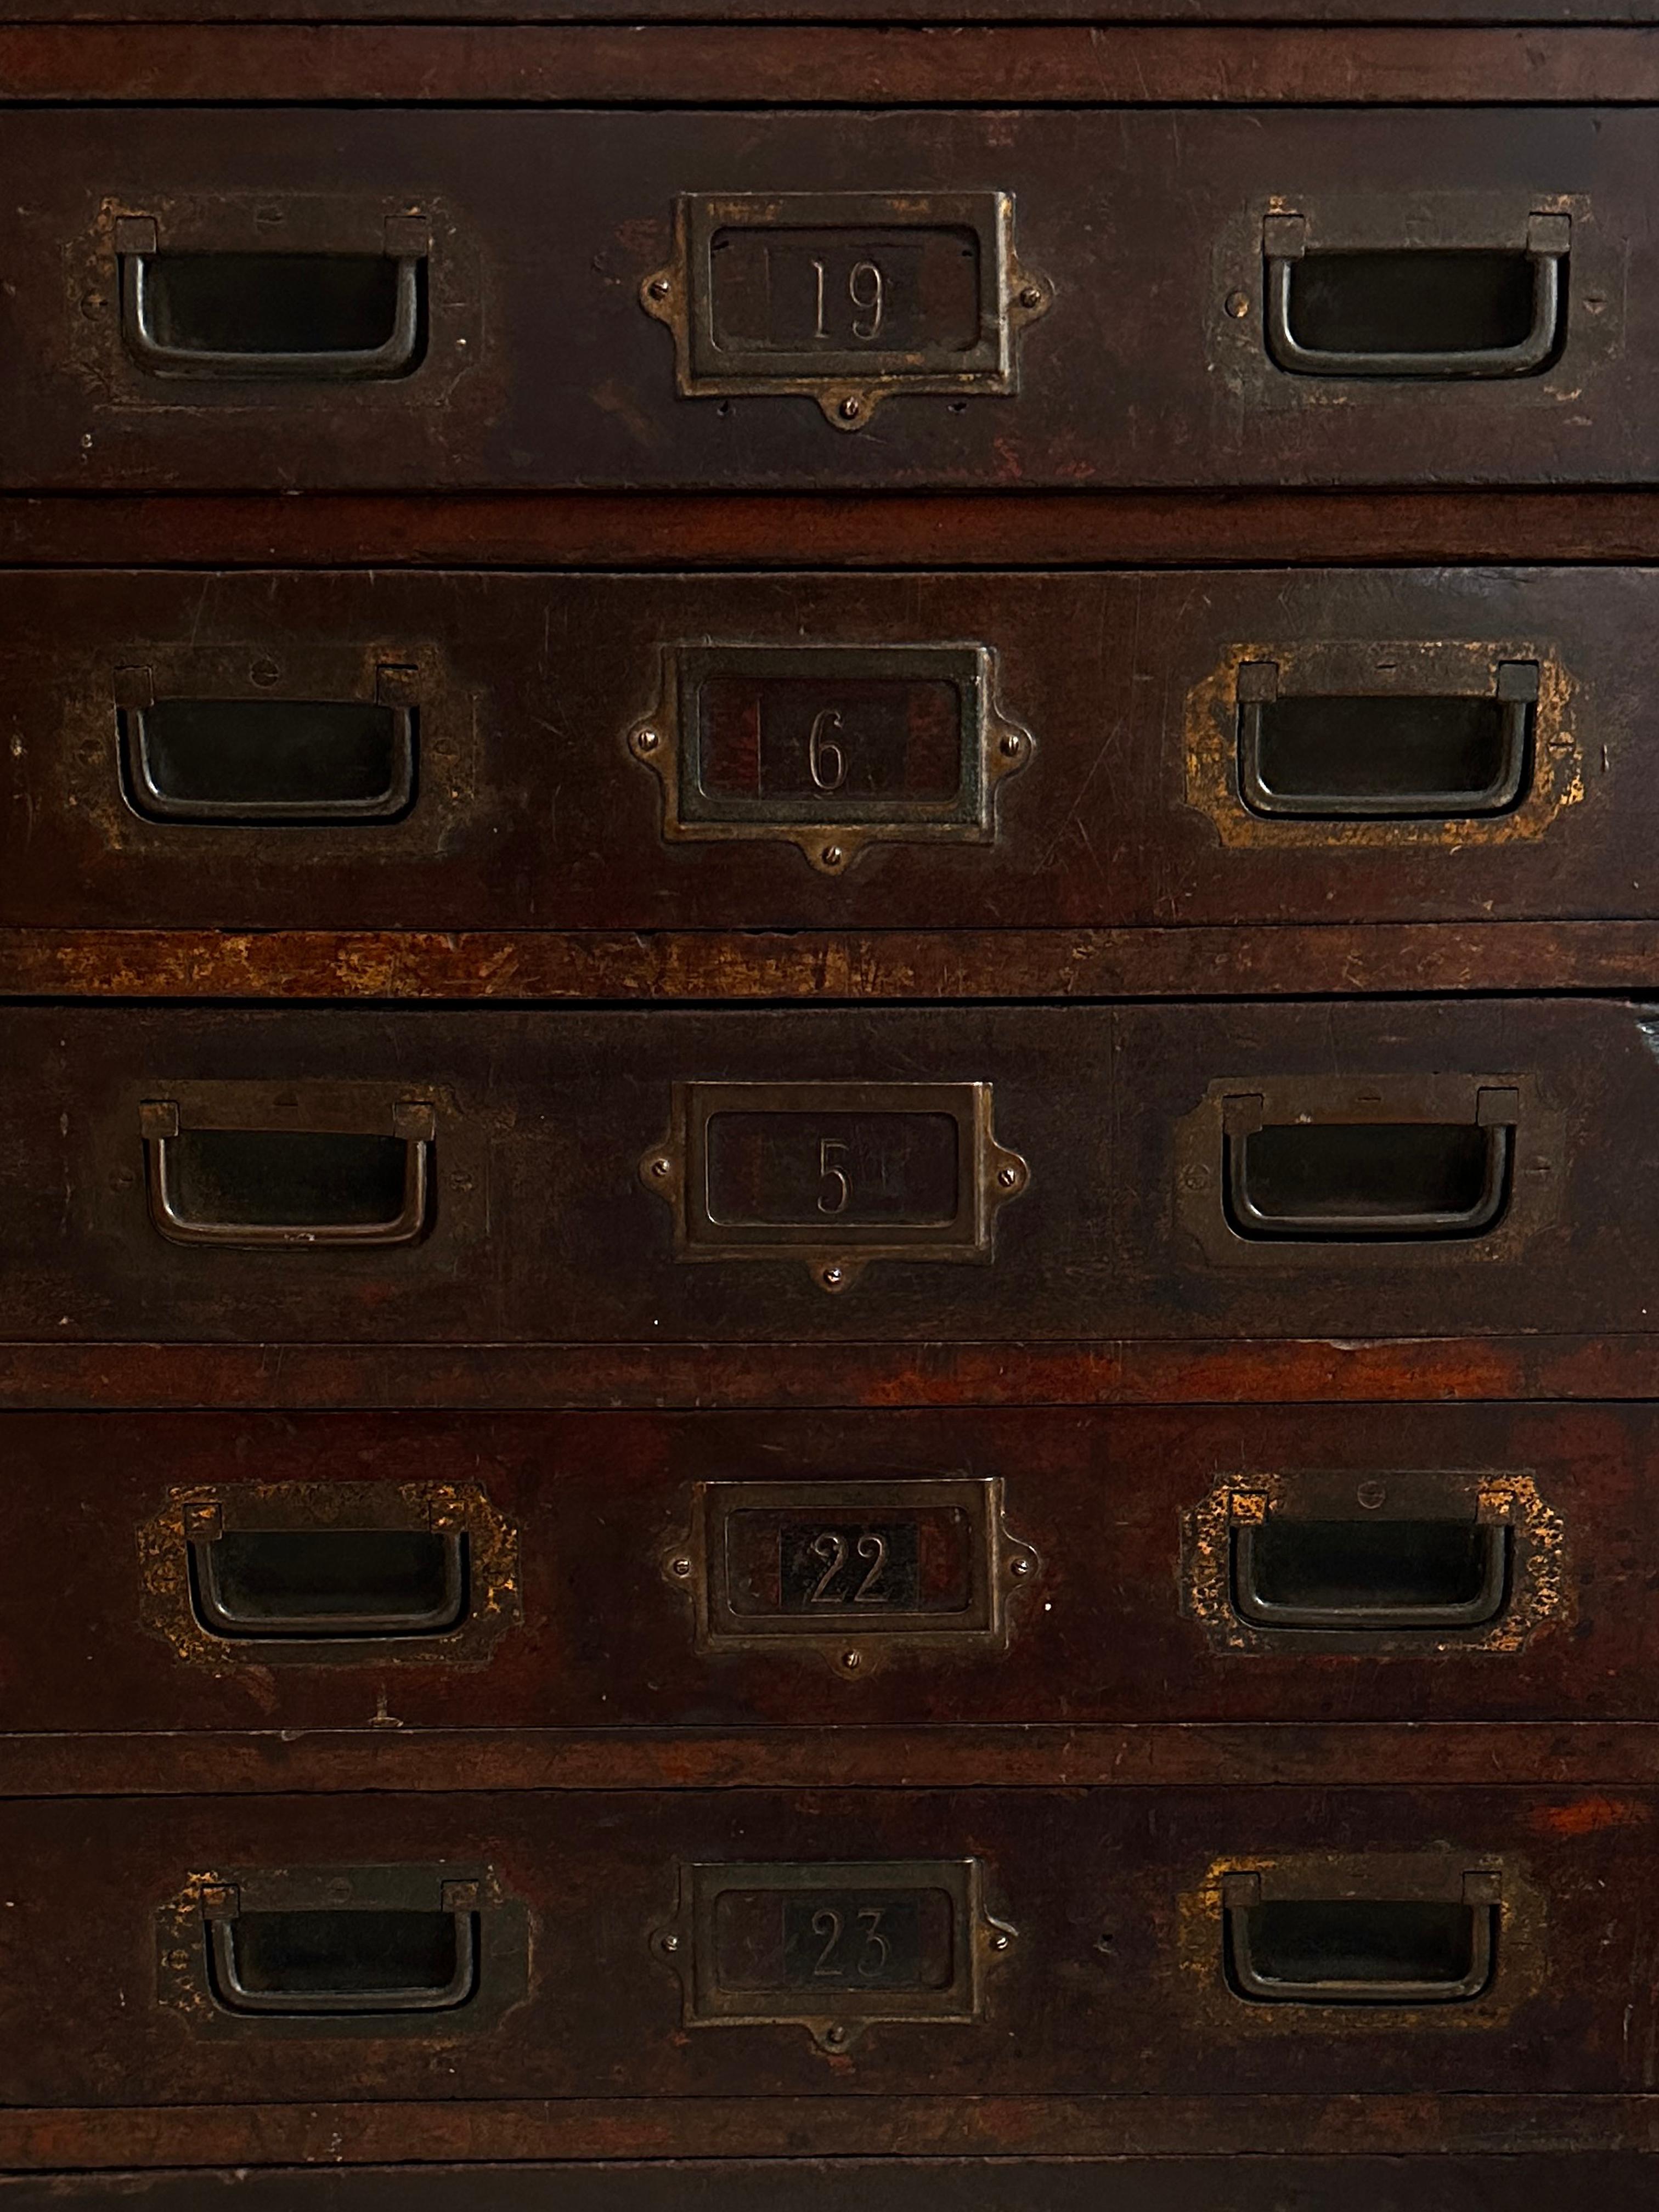 - Une merveilleuse banque de tiroirs de campagne militaire en acajou, anglais vers 1920.
- Les tiroirs sont de qualité supérieure, magnifiquement réalisés avec des assemblages à queue d'aronde et des poignées en laiton de style militaire